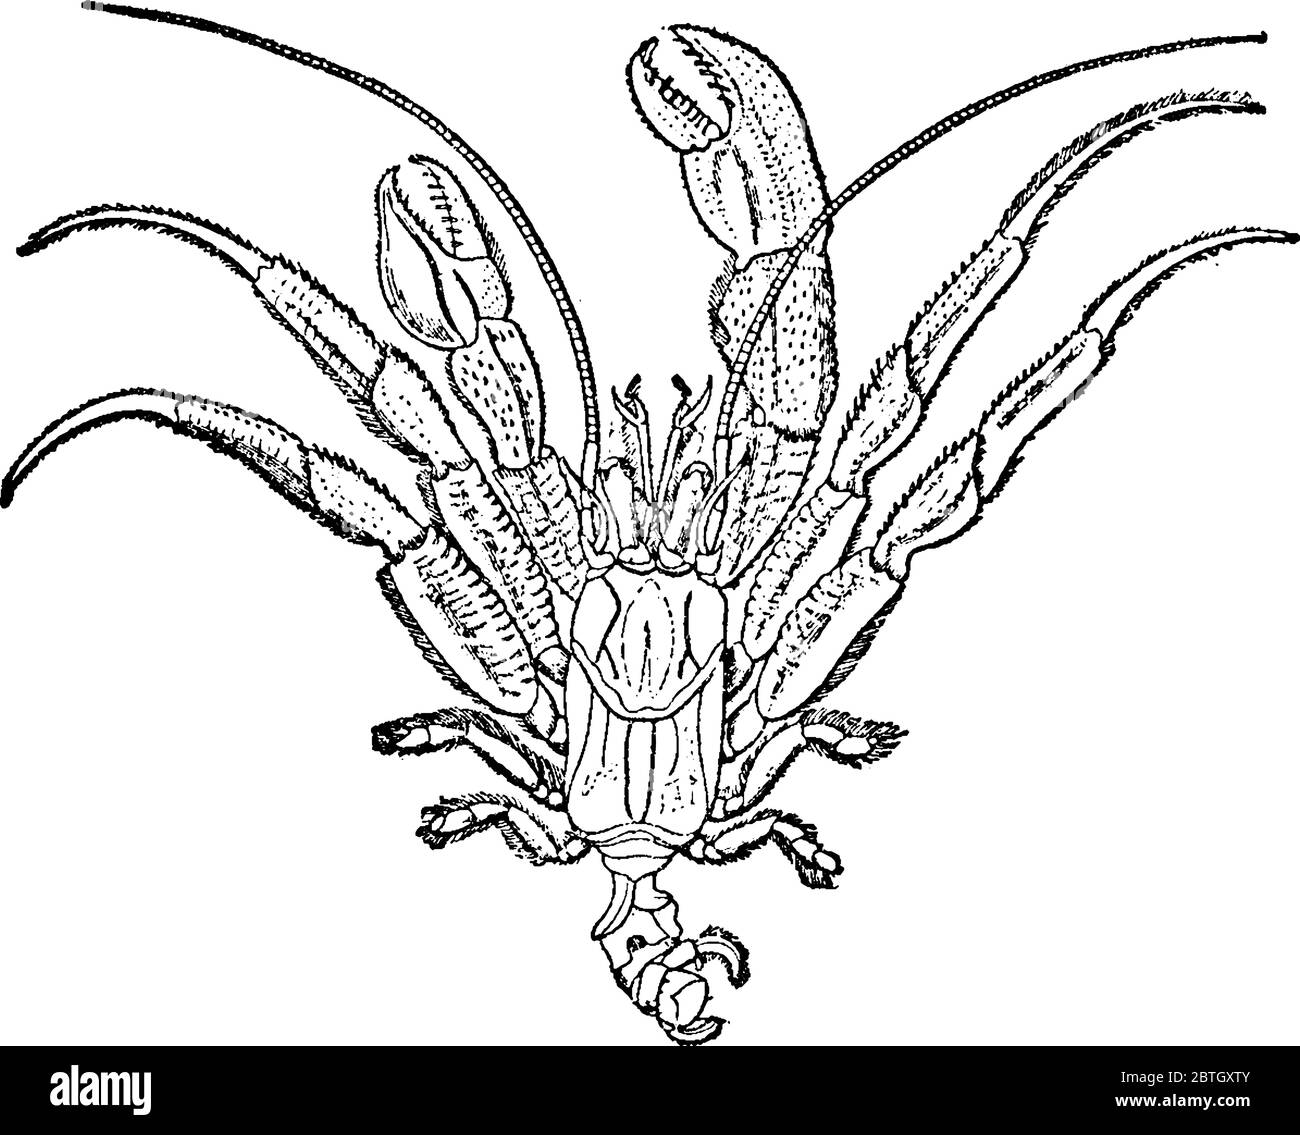 Les crabes ermite, généralement observés dans la zone intertidale, par exemple dans les bassins de marée, ont des abdomes longs et doux, un dessin de ligne vintage ou une gravure illustrae Illustration de Vecteur